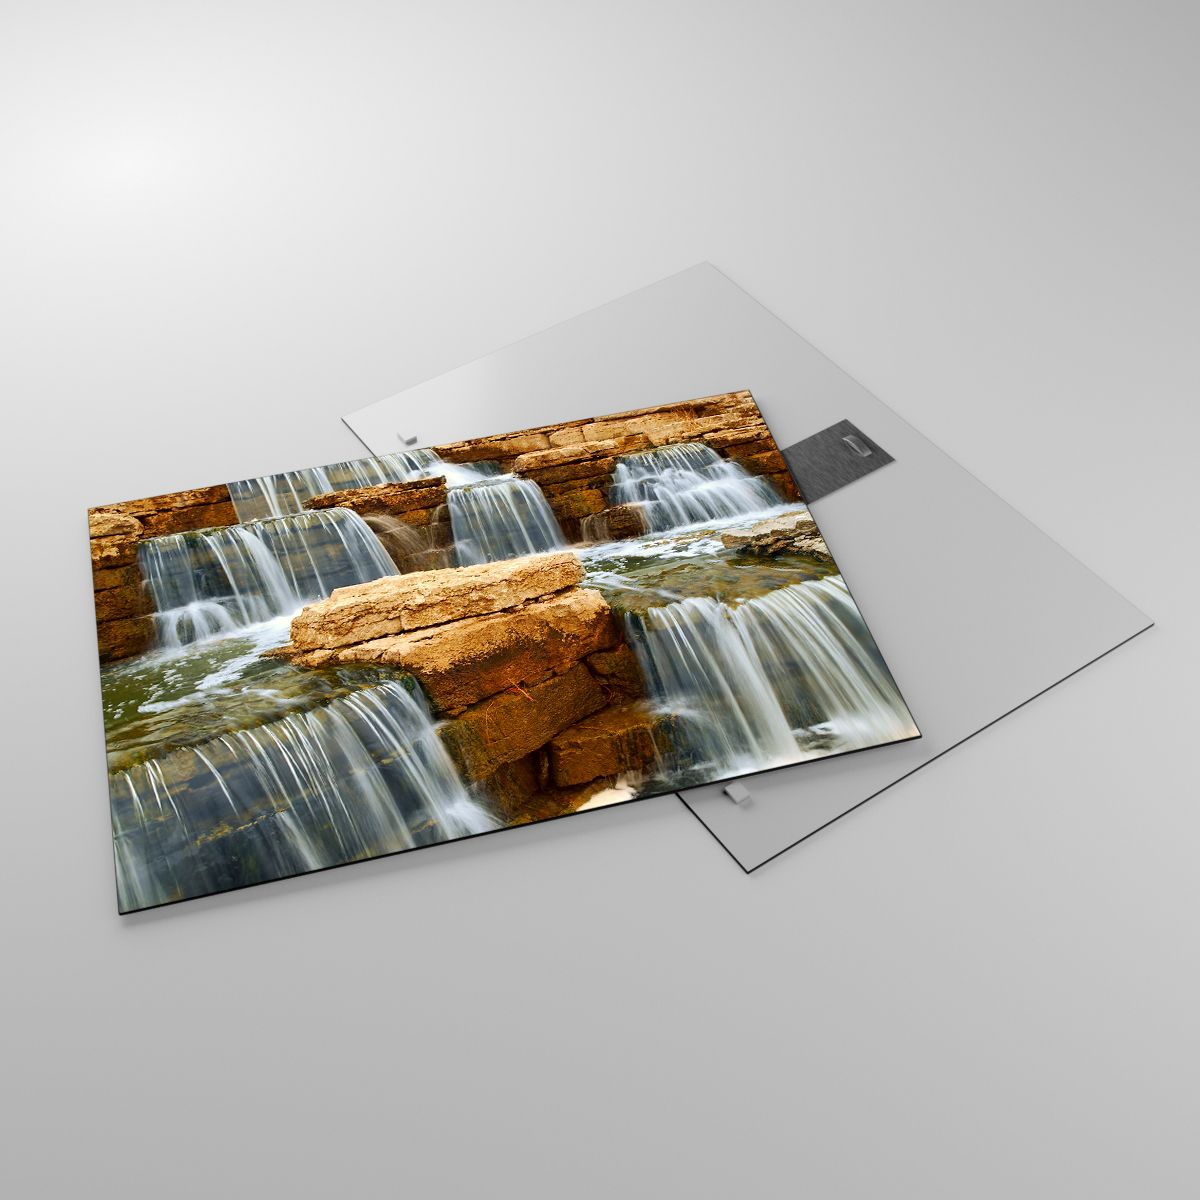 Glasbild Wasserfall, Glasbild Natur, Glasbild Landschaft, Glasbild Wasser, Glasbild Strom